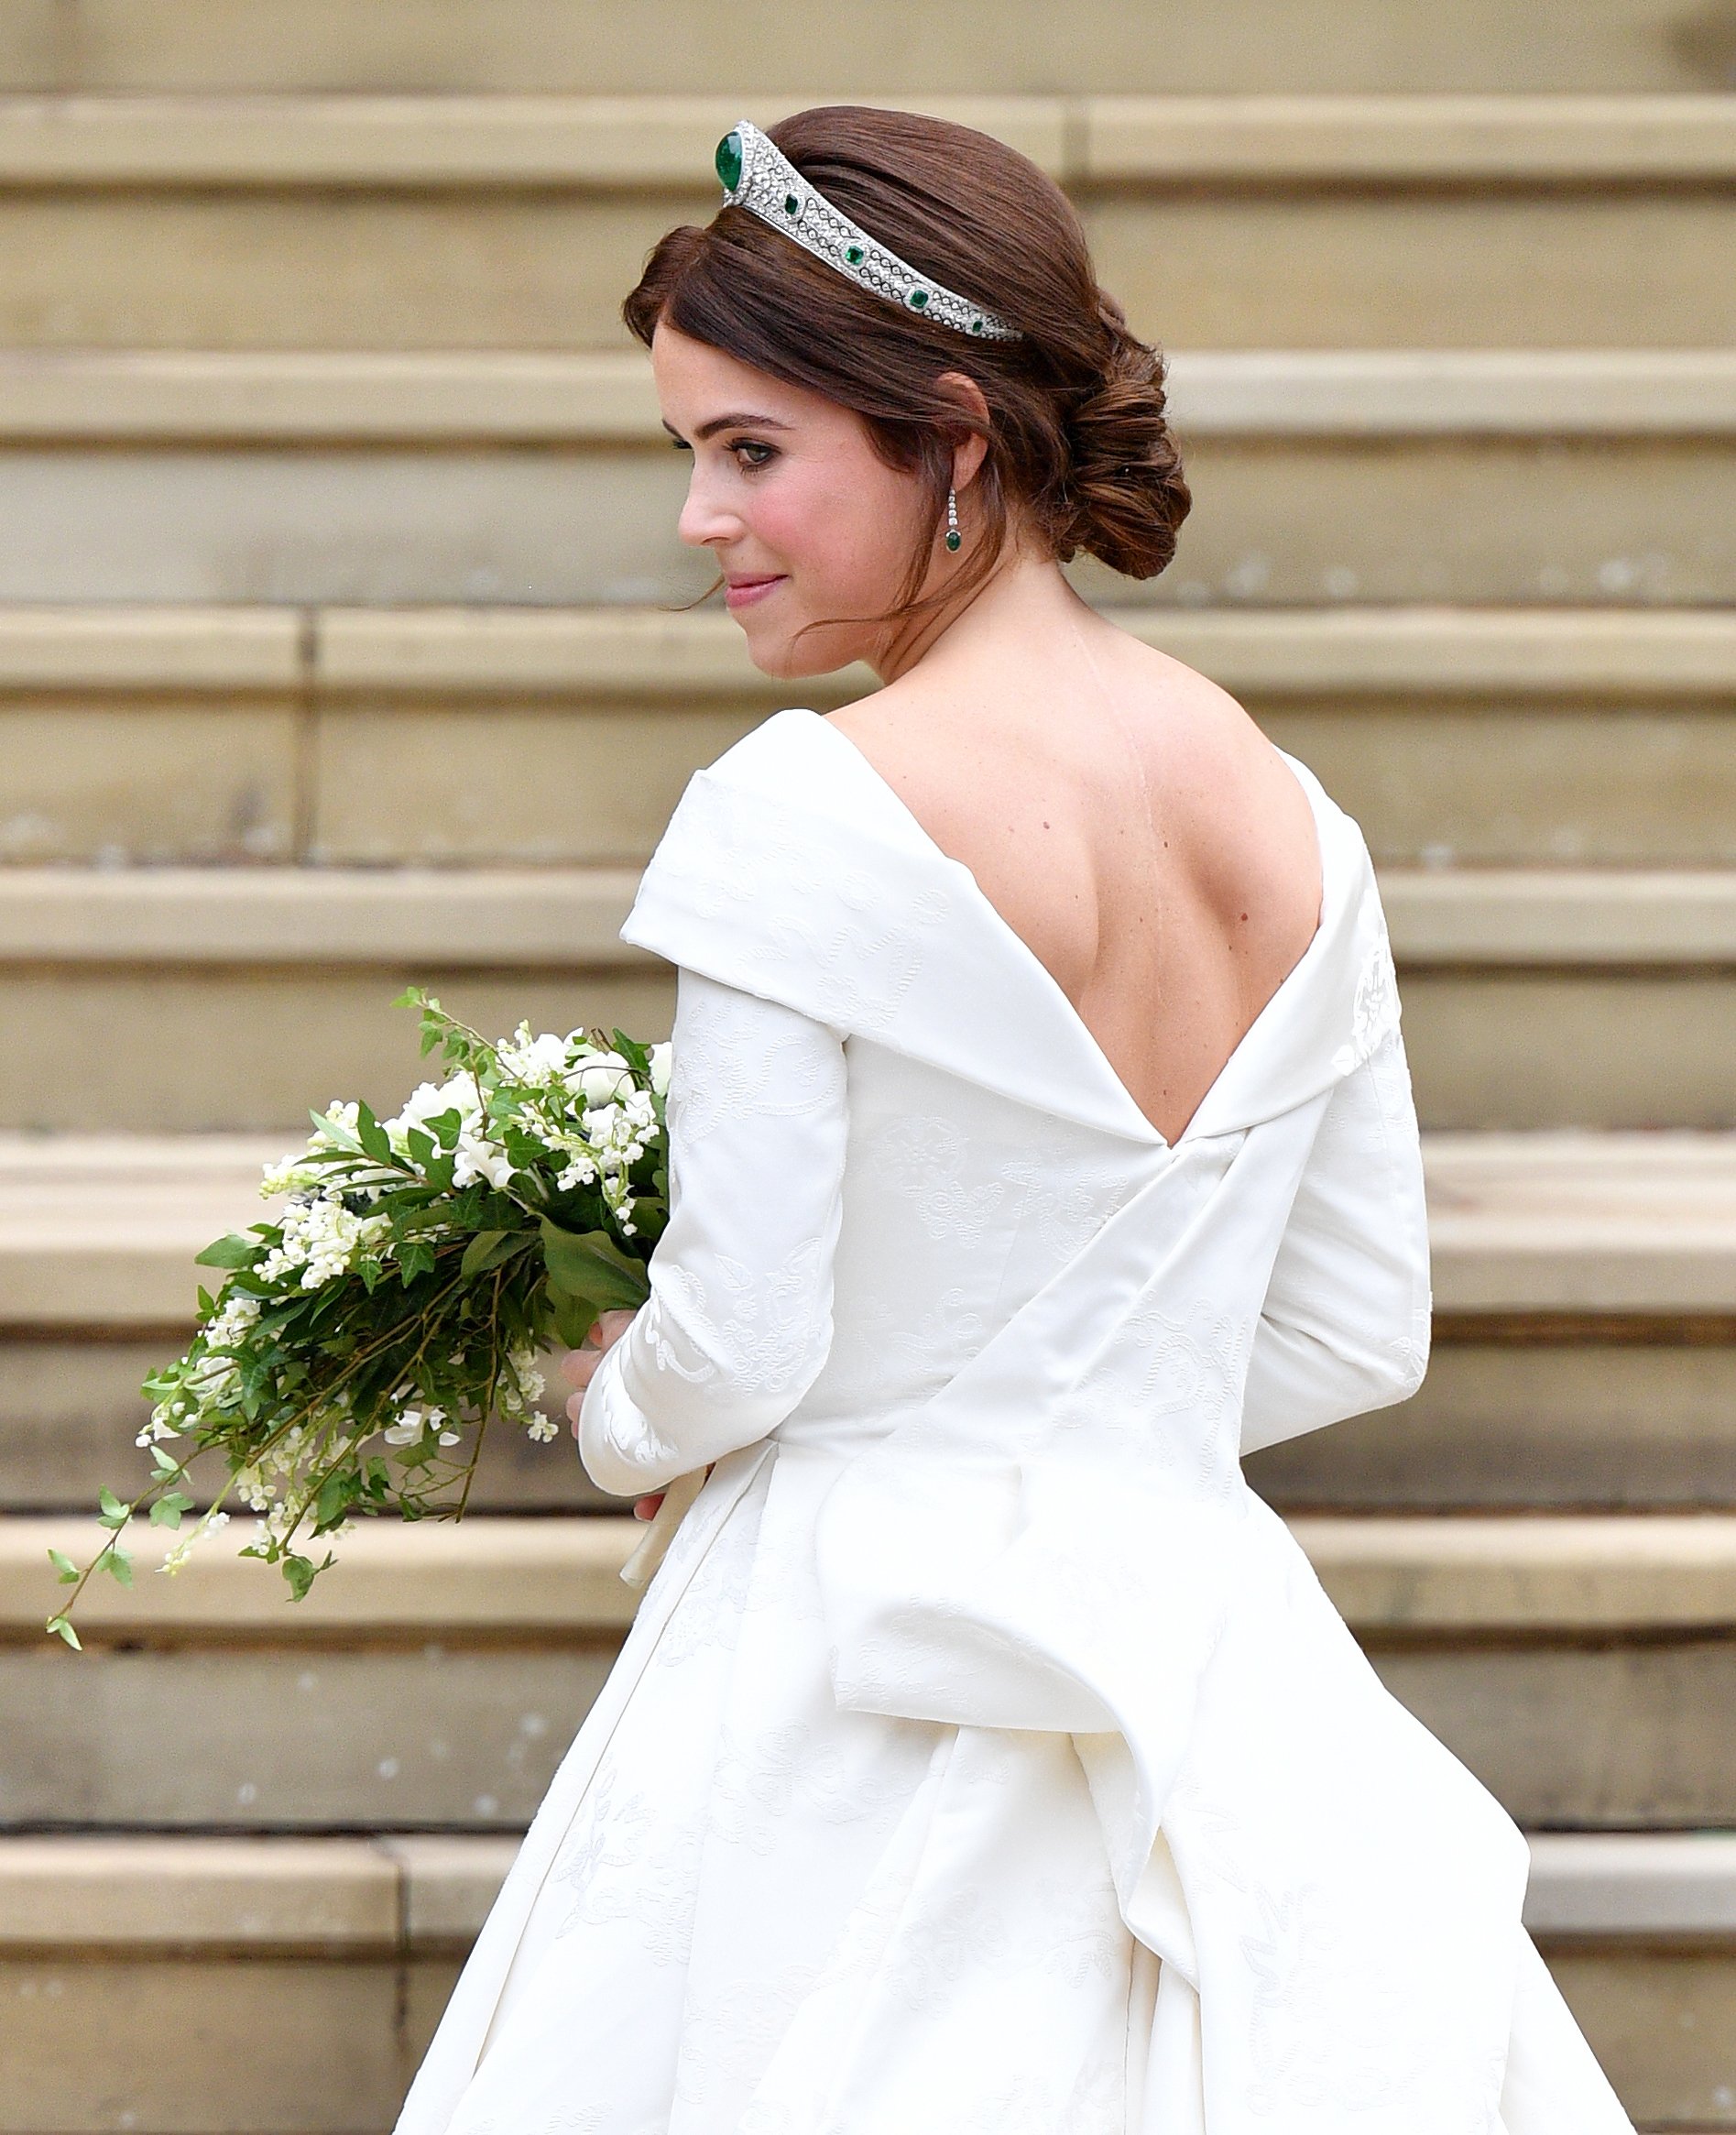 La princesa Eugenie en la Capilla de St George antes de su boda con Jack Brooksbank el 12 de octubre de 2018 en Windsor, Inglaterra. | Foto: Getty Images